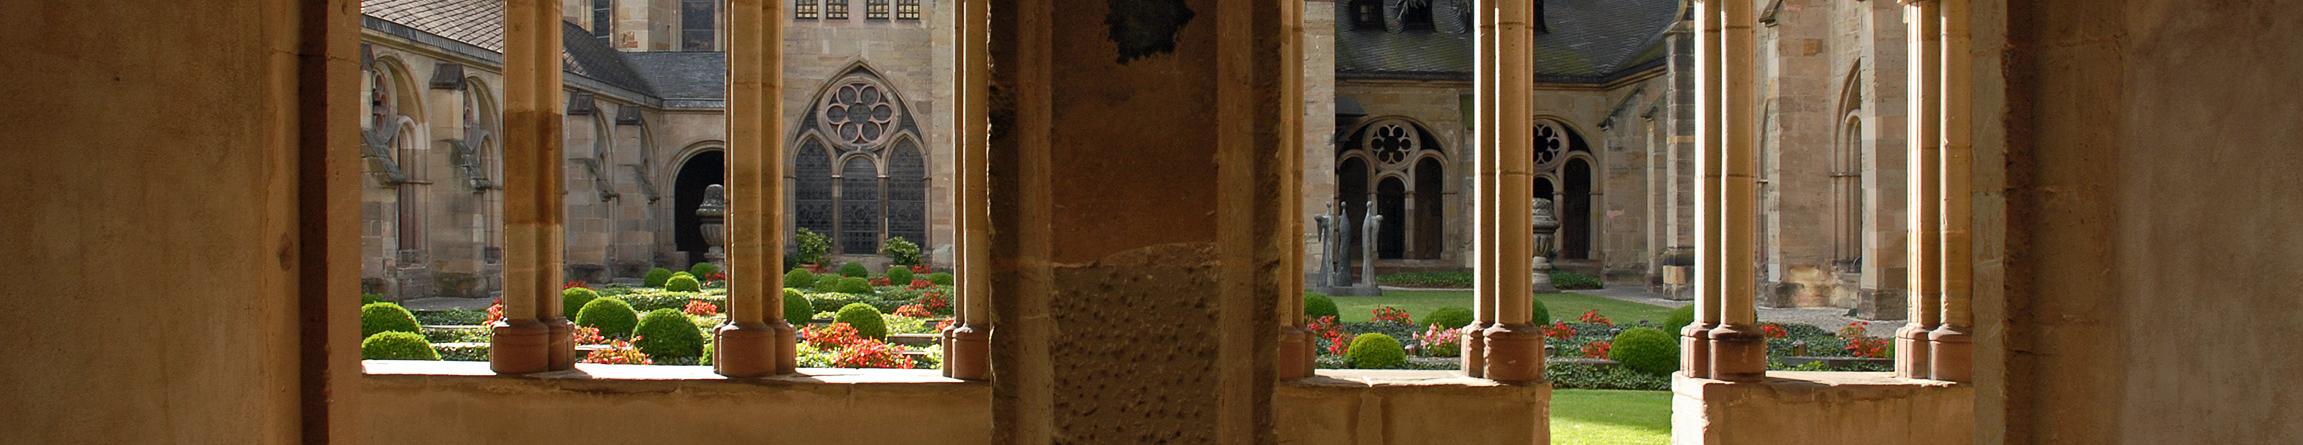 Blick durch zwei Torbögen in den Kreuzgang des Trierer Doms und in den Garten.